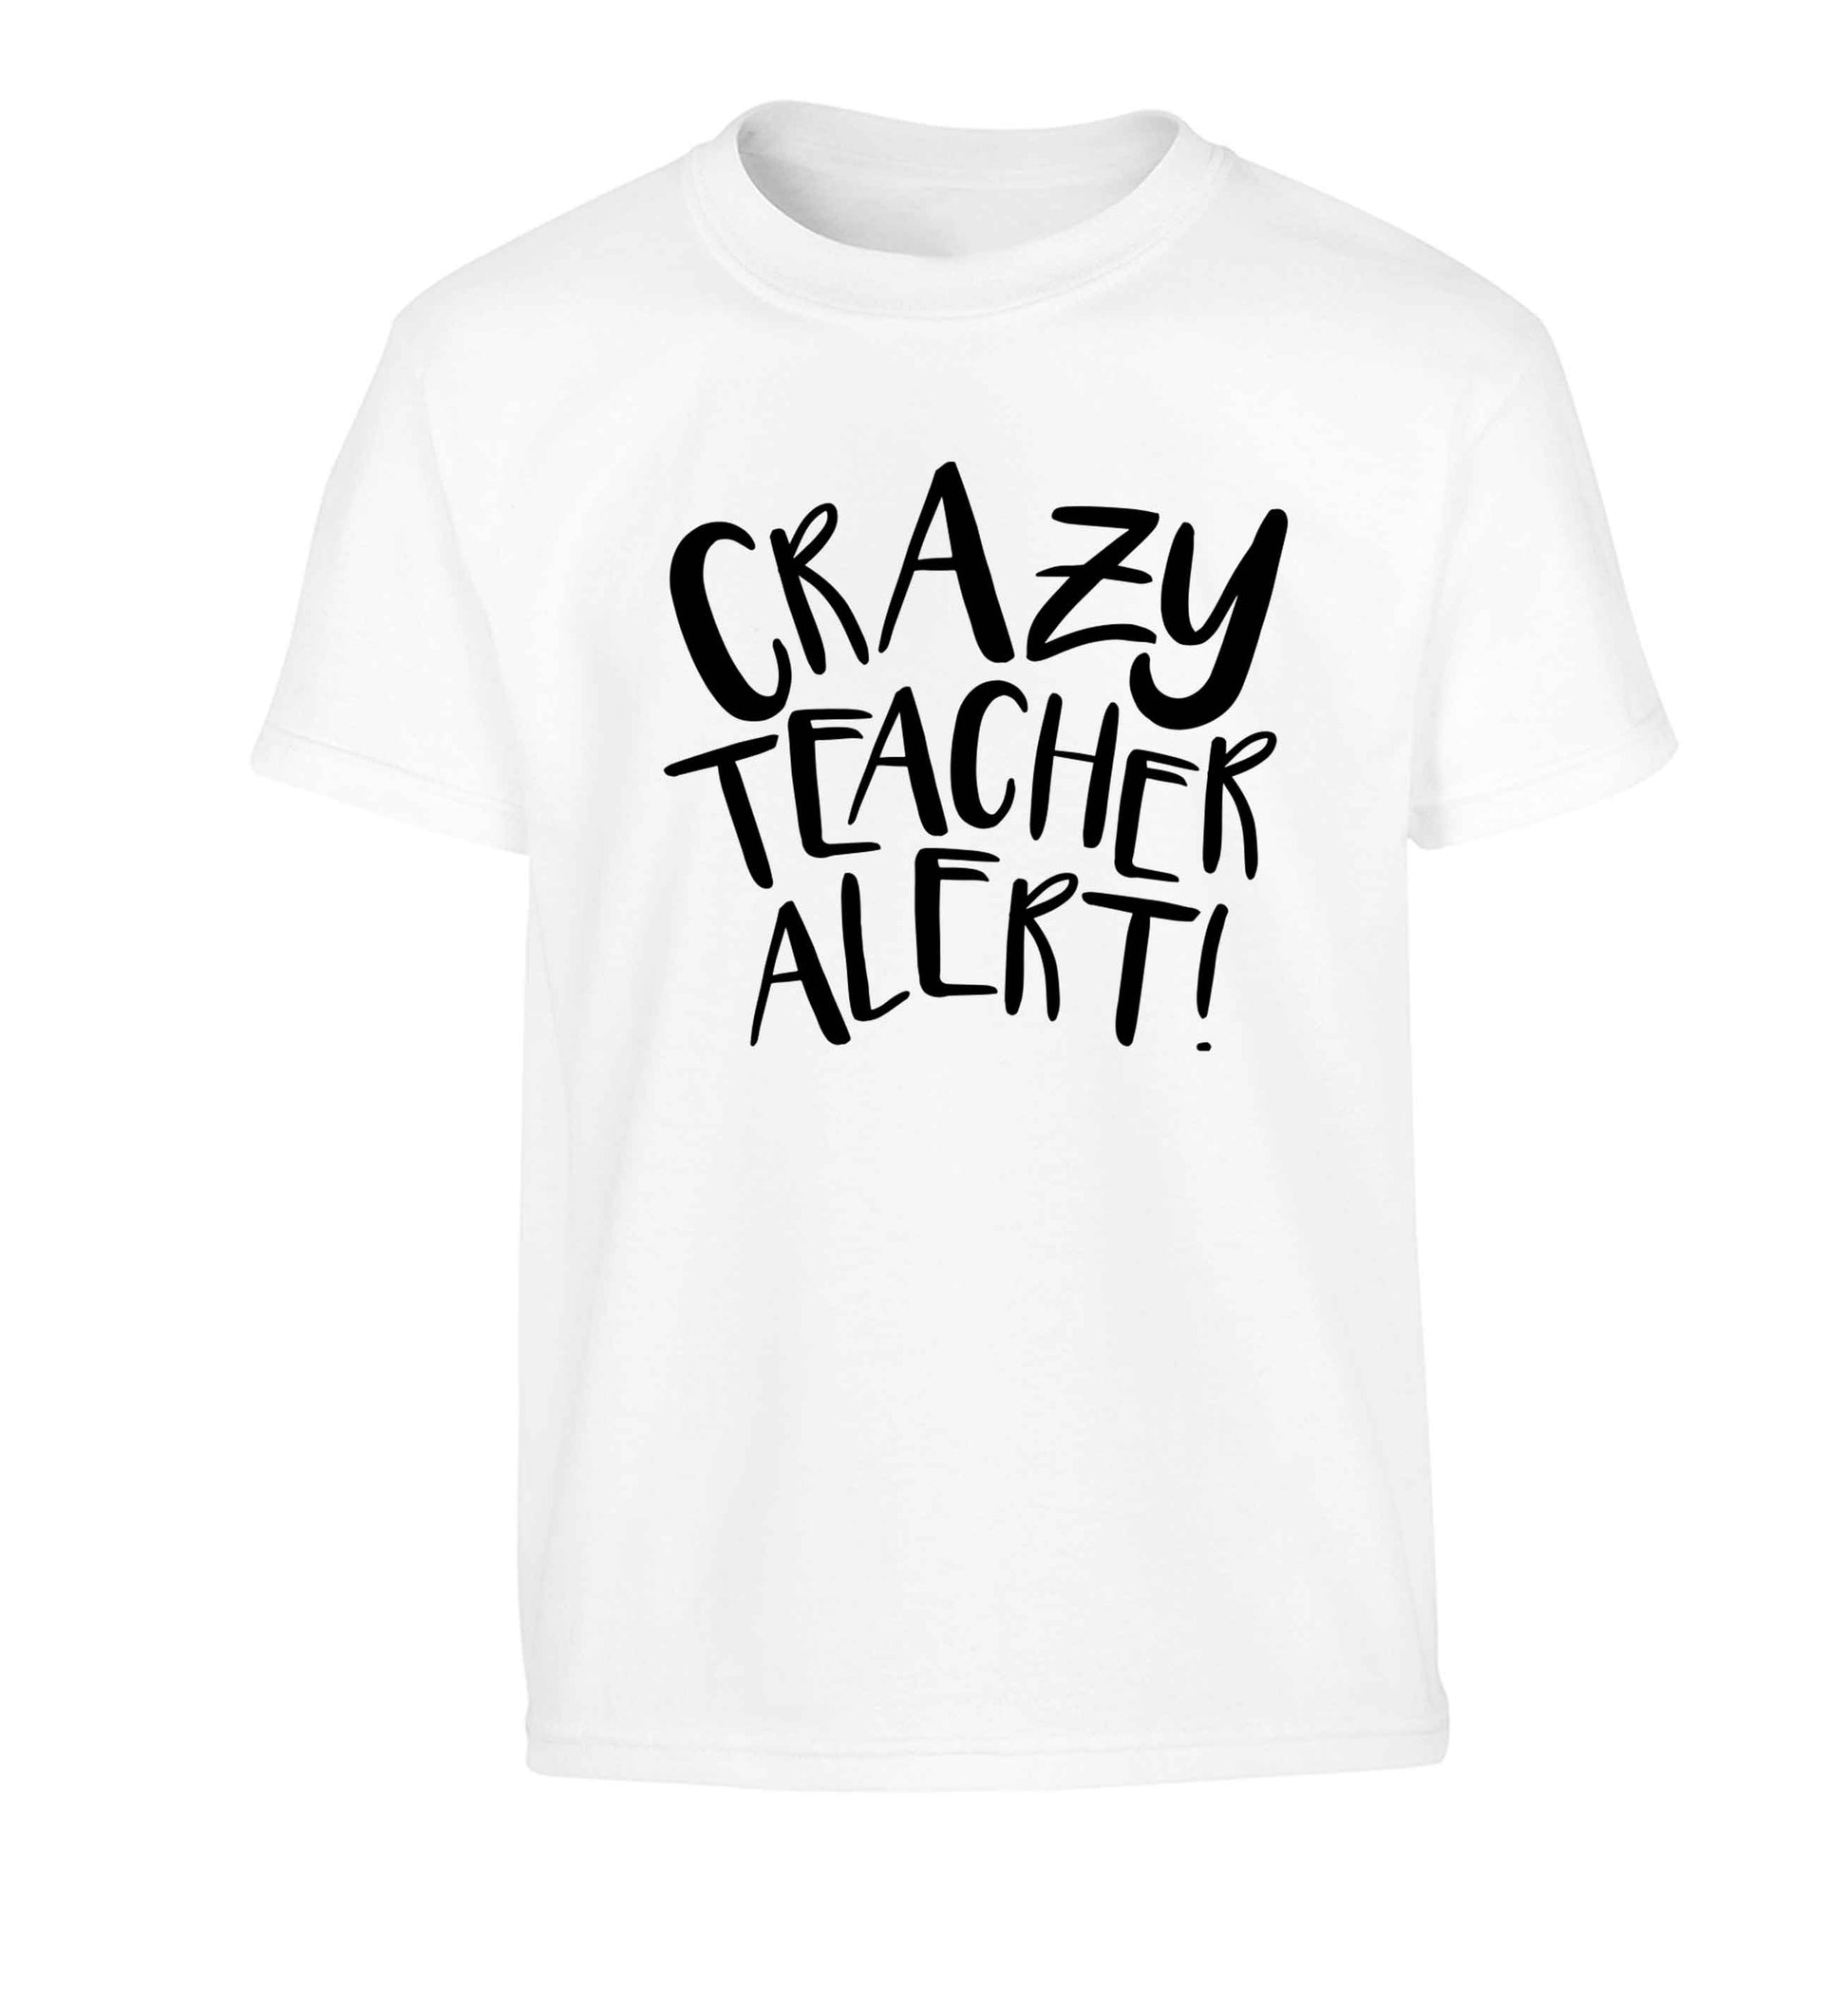 Crazy teacher alert Children's white Tshirt 12-13 Years